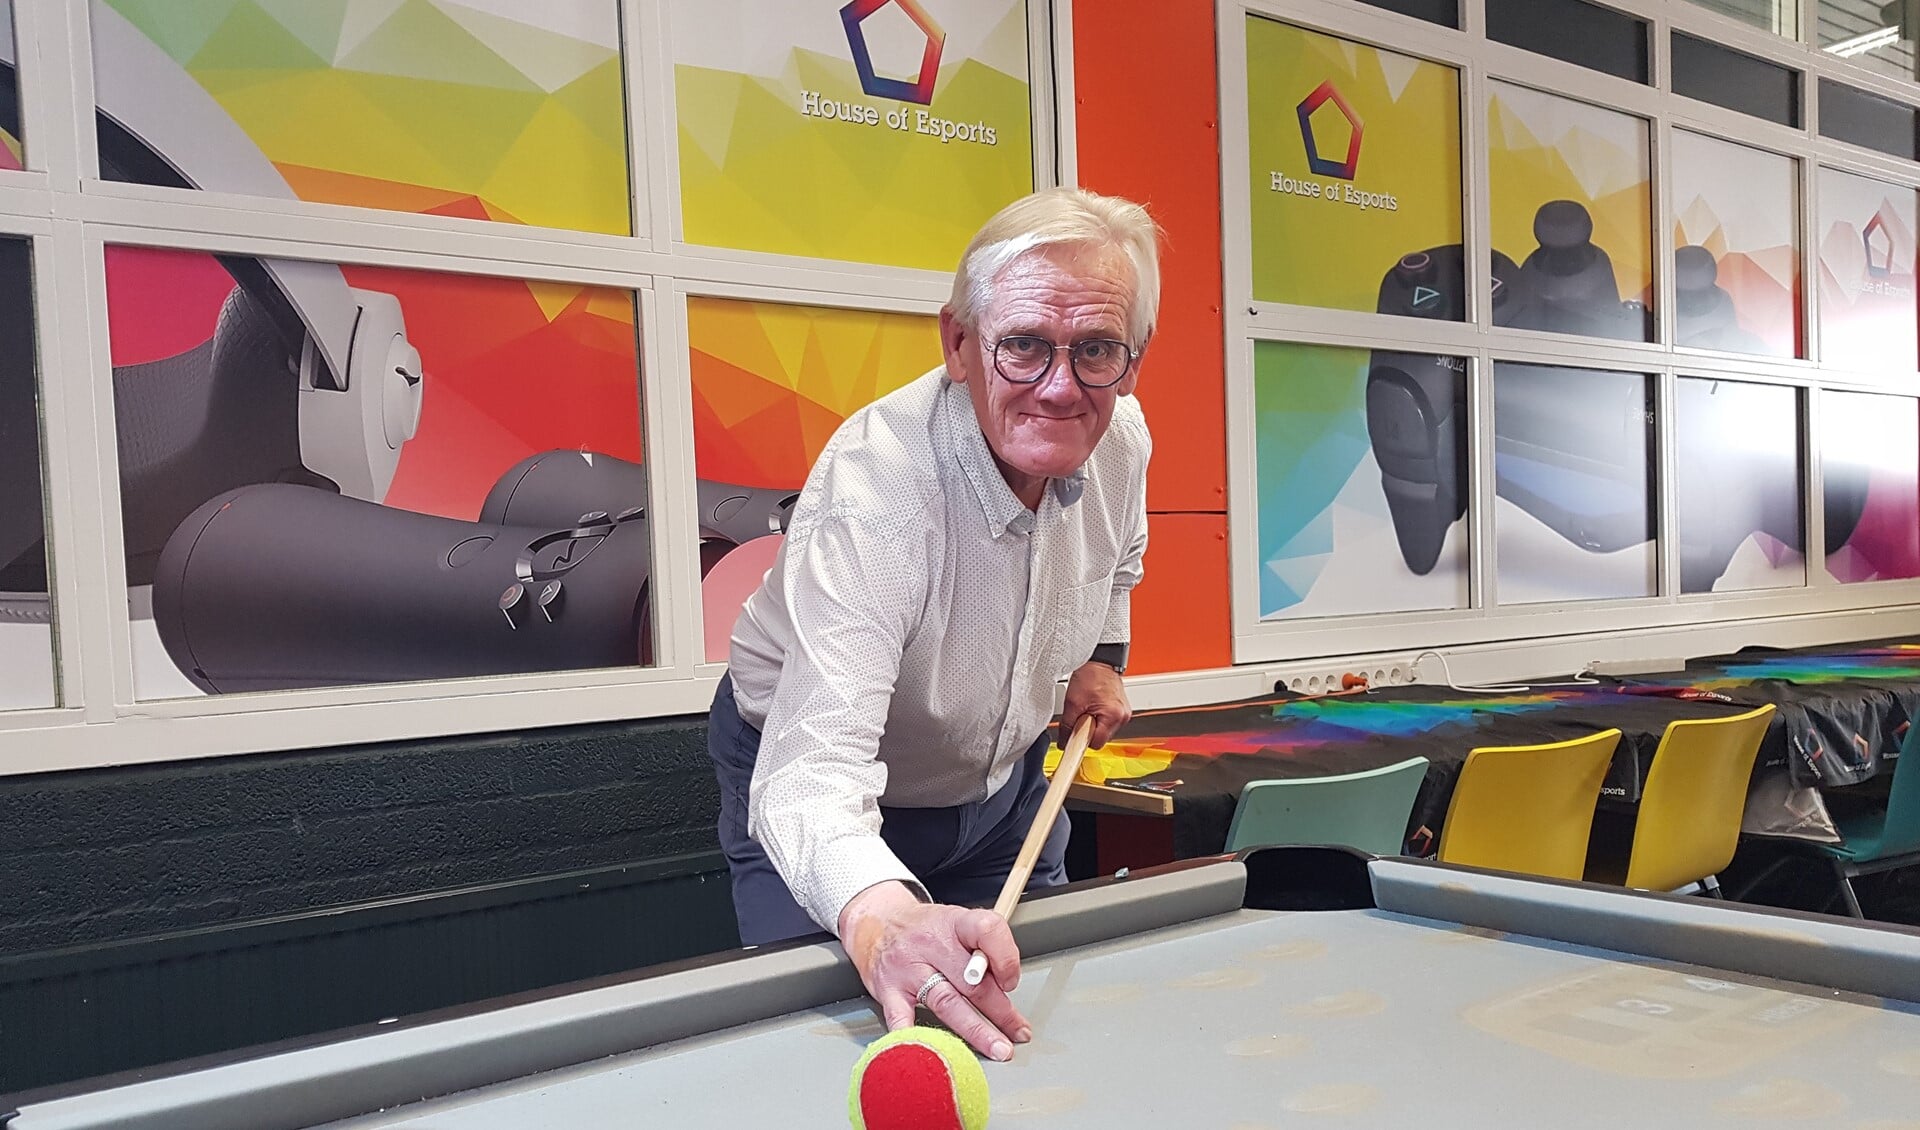 Wim Noordzij is met House of Esports sportaanbieder op de Senior Games, met onder meer een iPool biljarttafel. Foto: Emile Hilgers